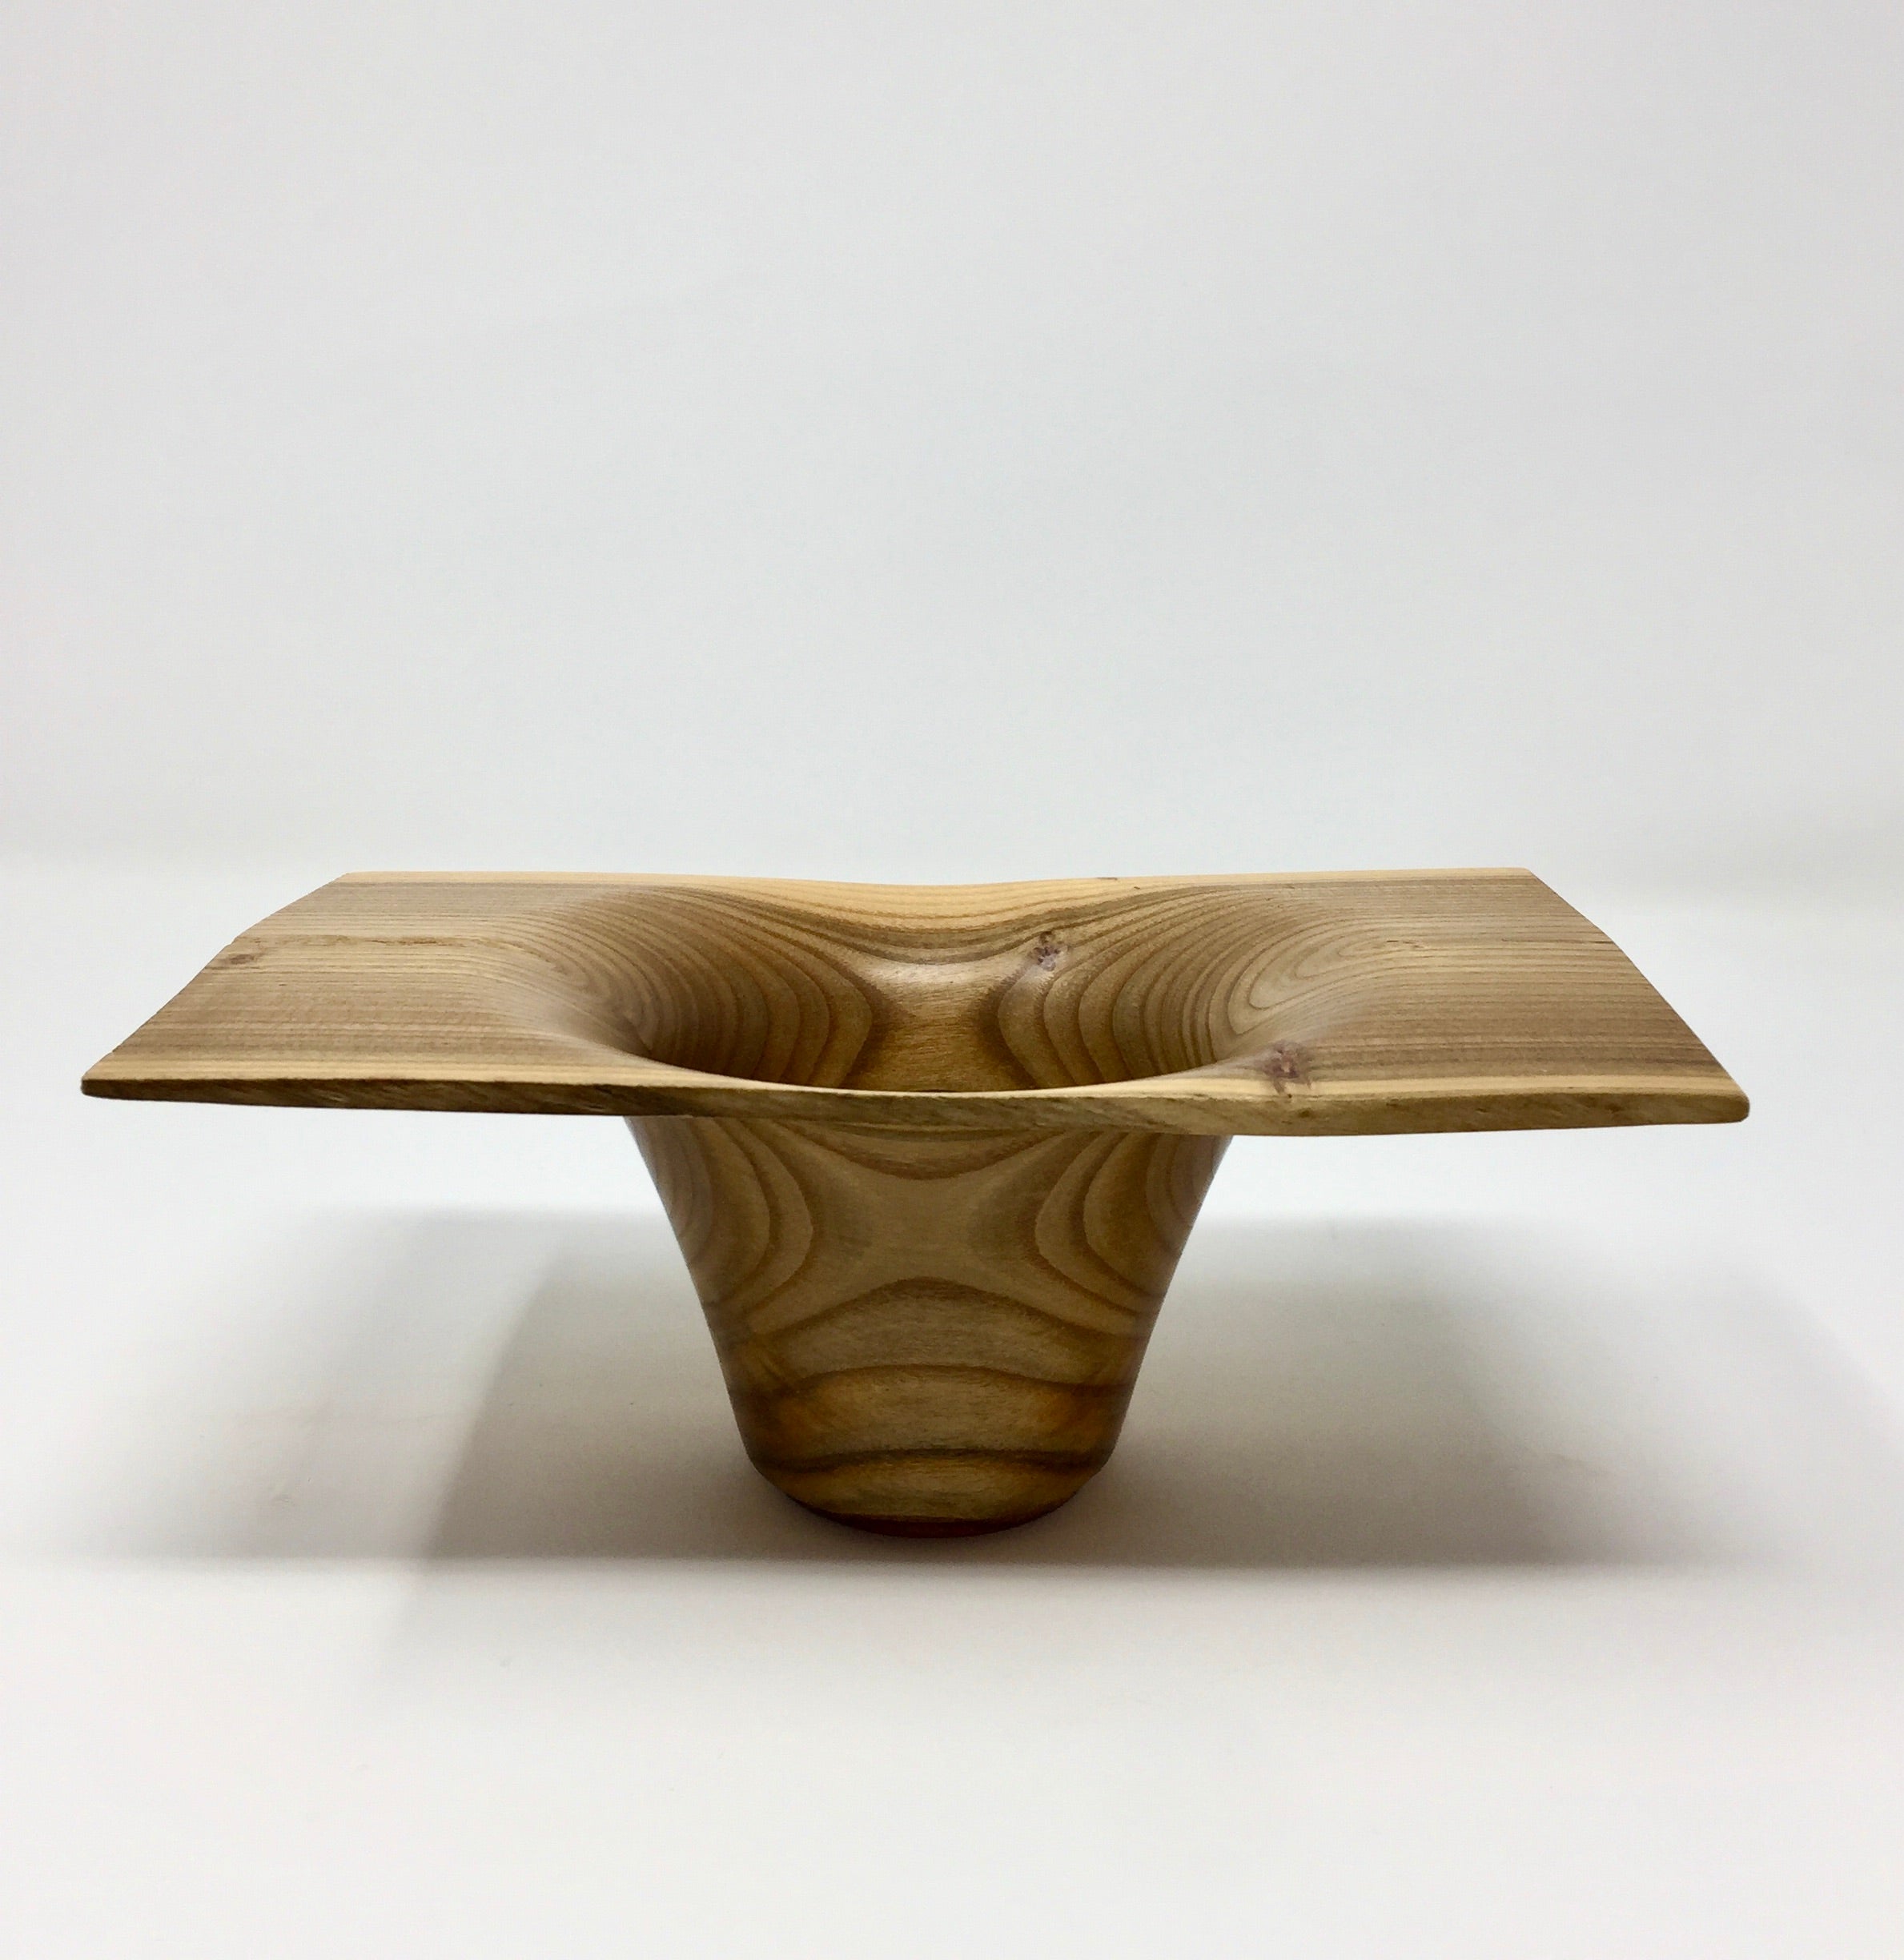 Sumac/Mountain Ash Art Bowl